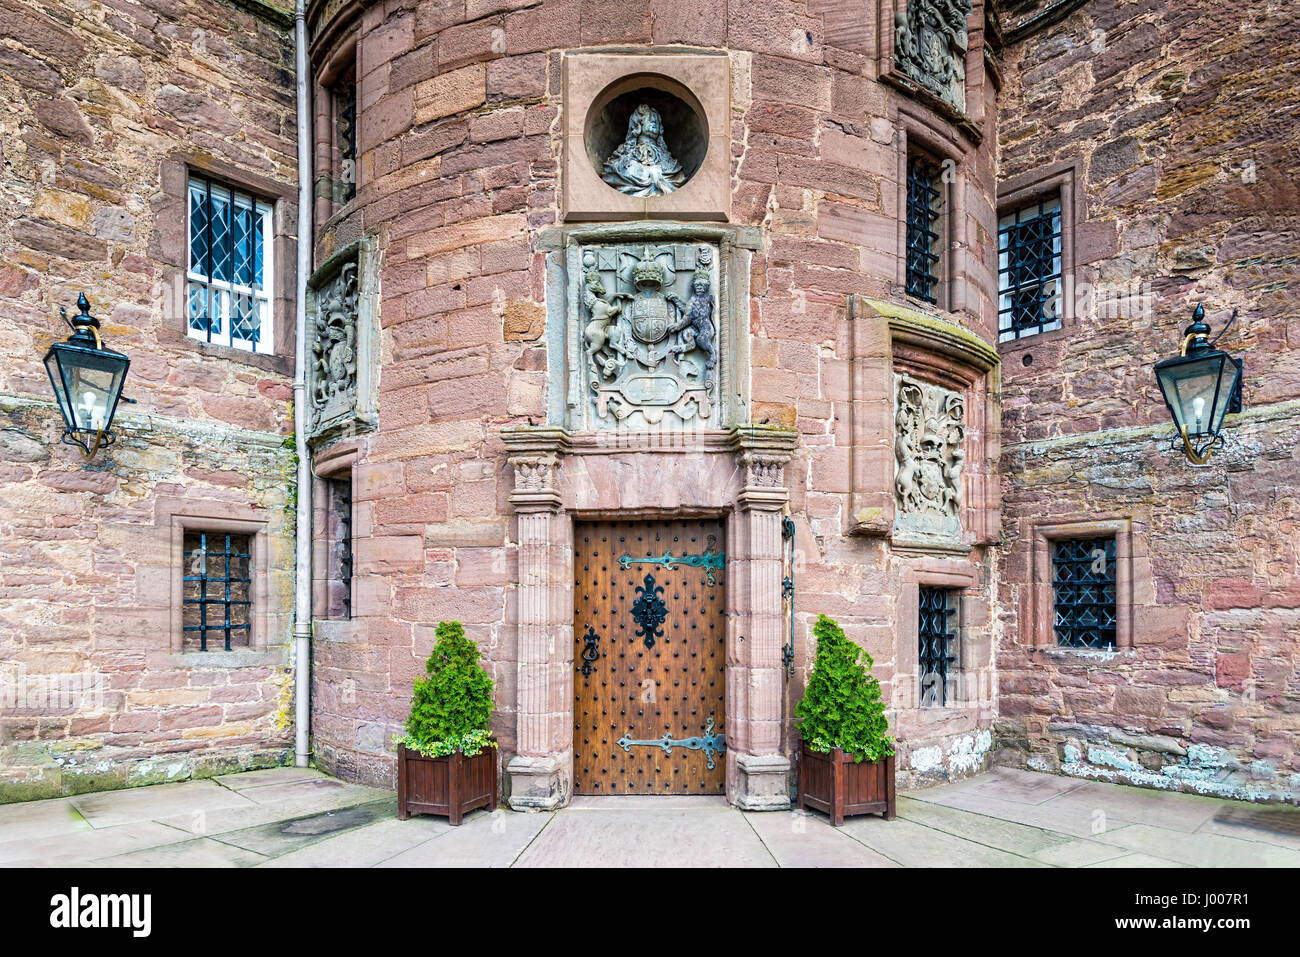 Glamis, Regno Unito - 17 agosto 2014: l'ingresso di Glamis Castle. Il castello è aperto al pubblico ed è stata la casa d'infanzia di Regina Elizabe Foto Stock